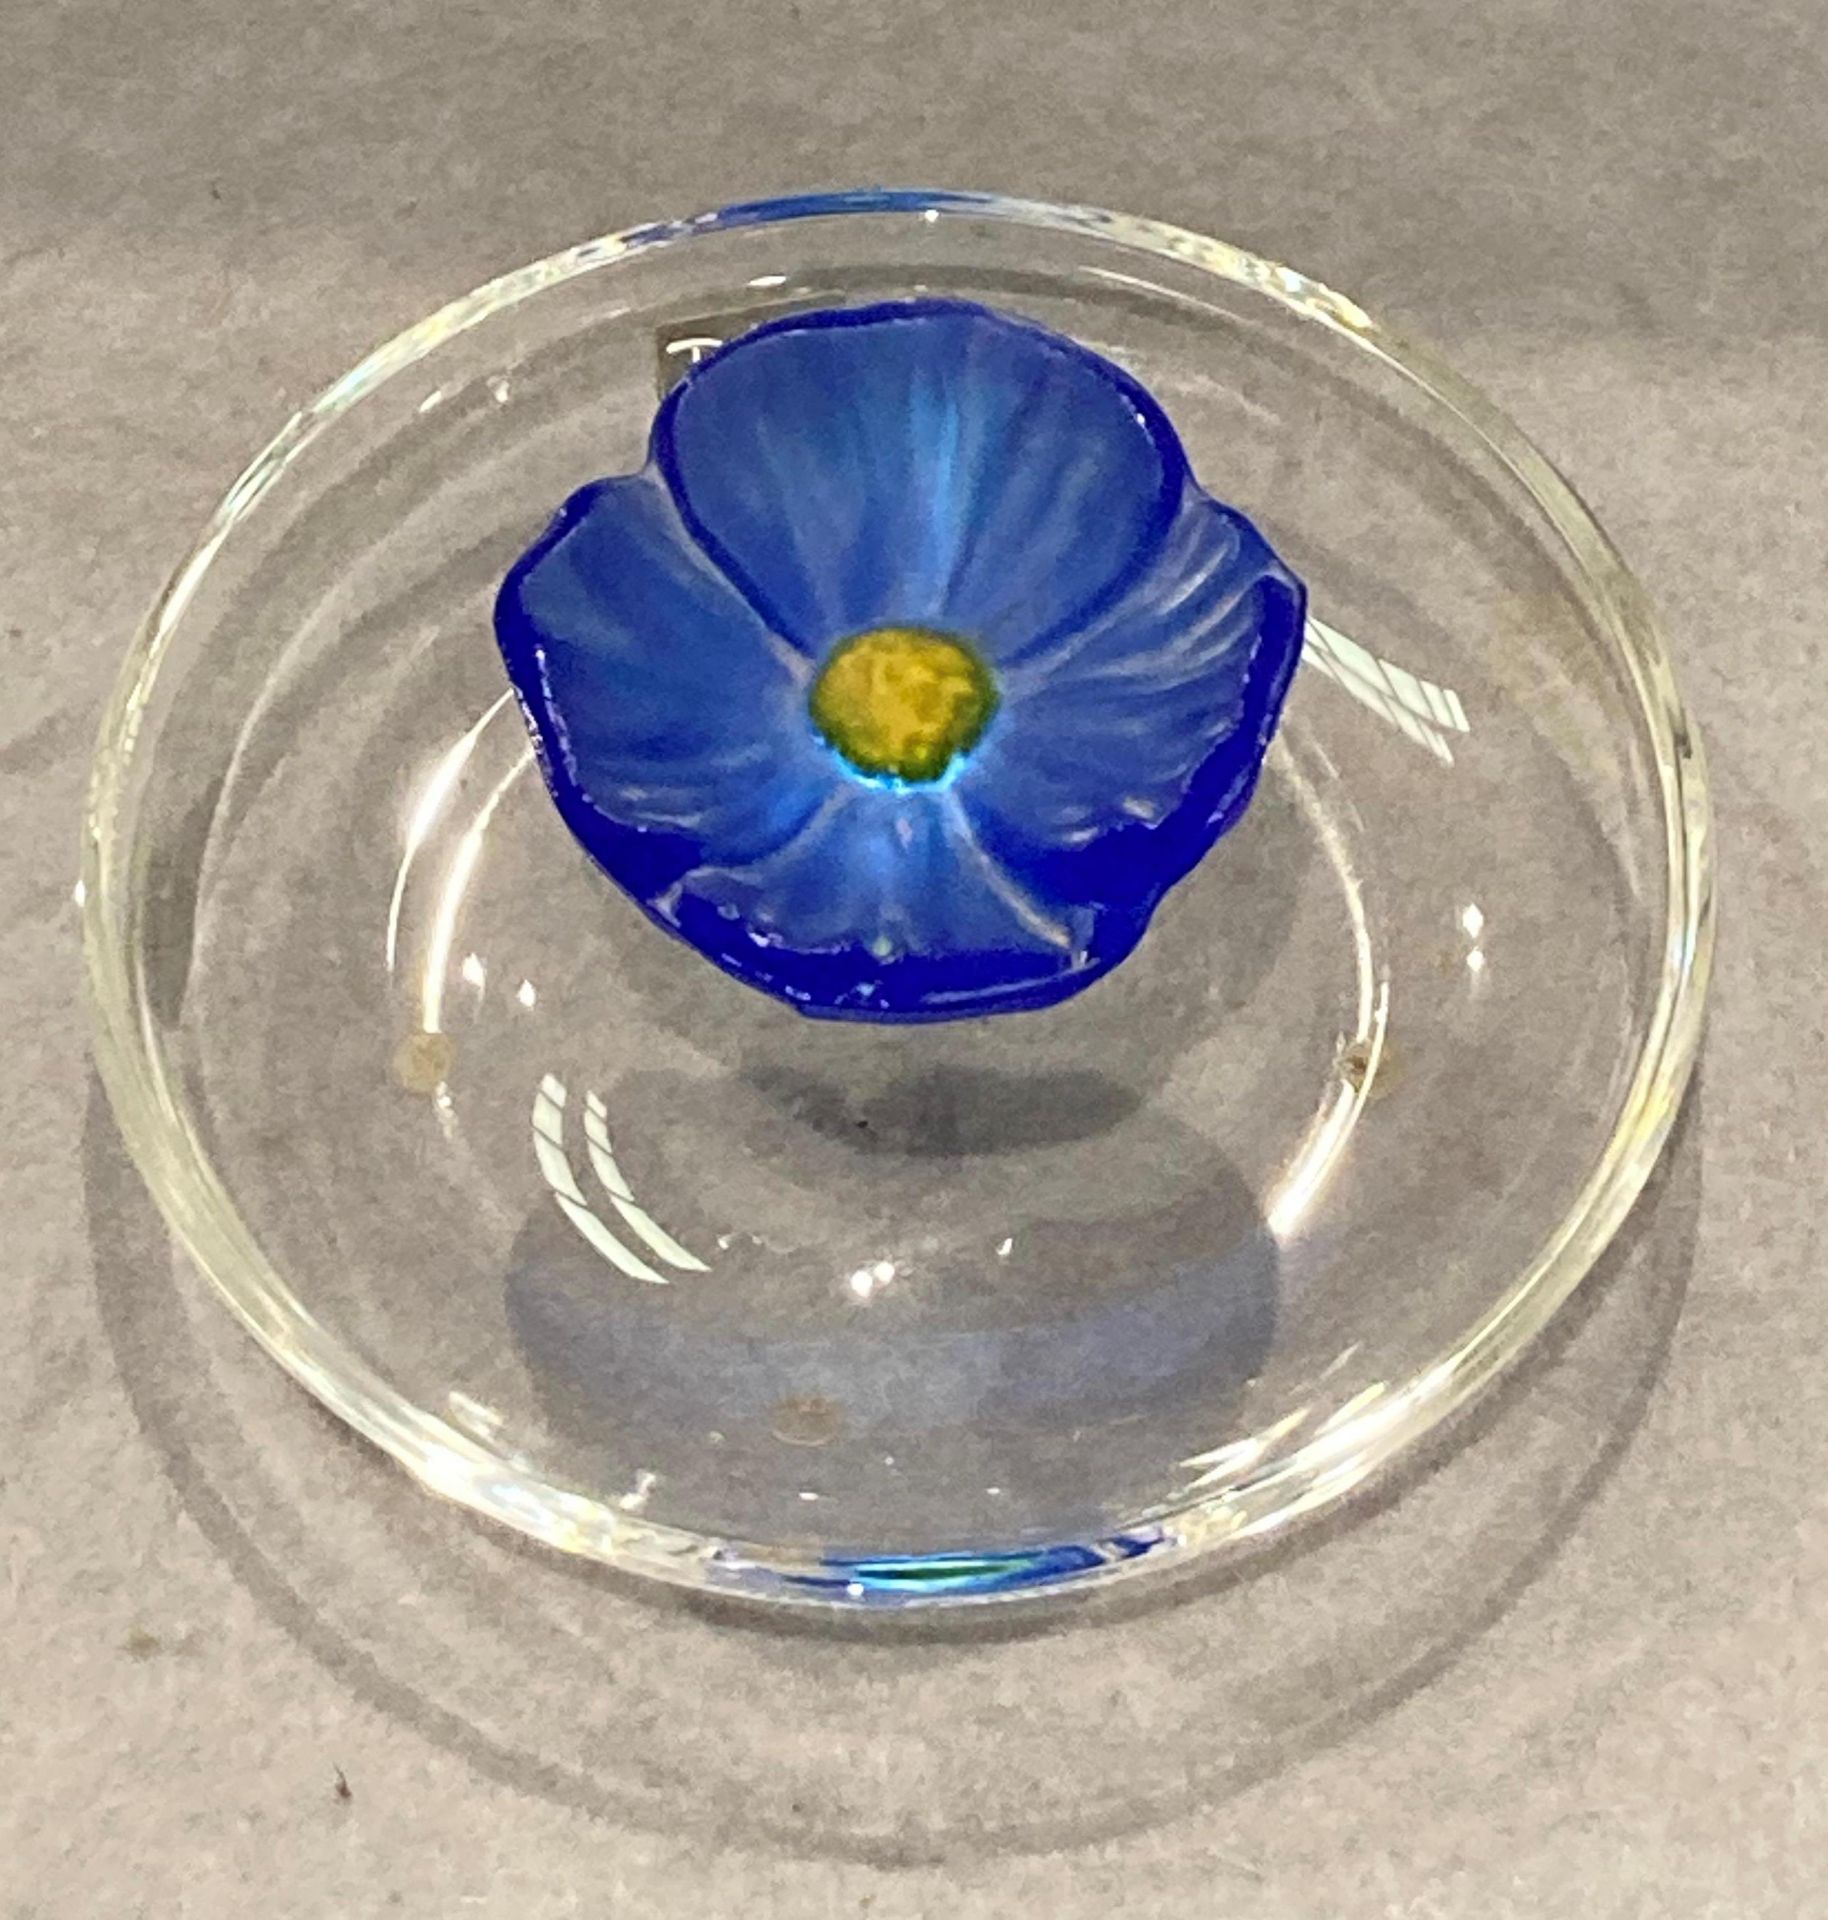 A Daum France Coupelle Cactus Fleur Bleu Franc modern pate de verre glass dish, - Image 4 of 5